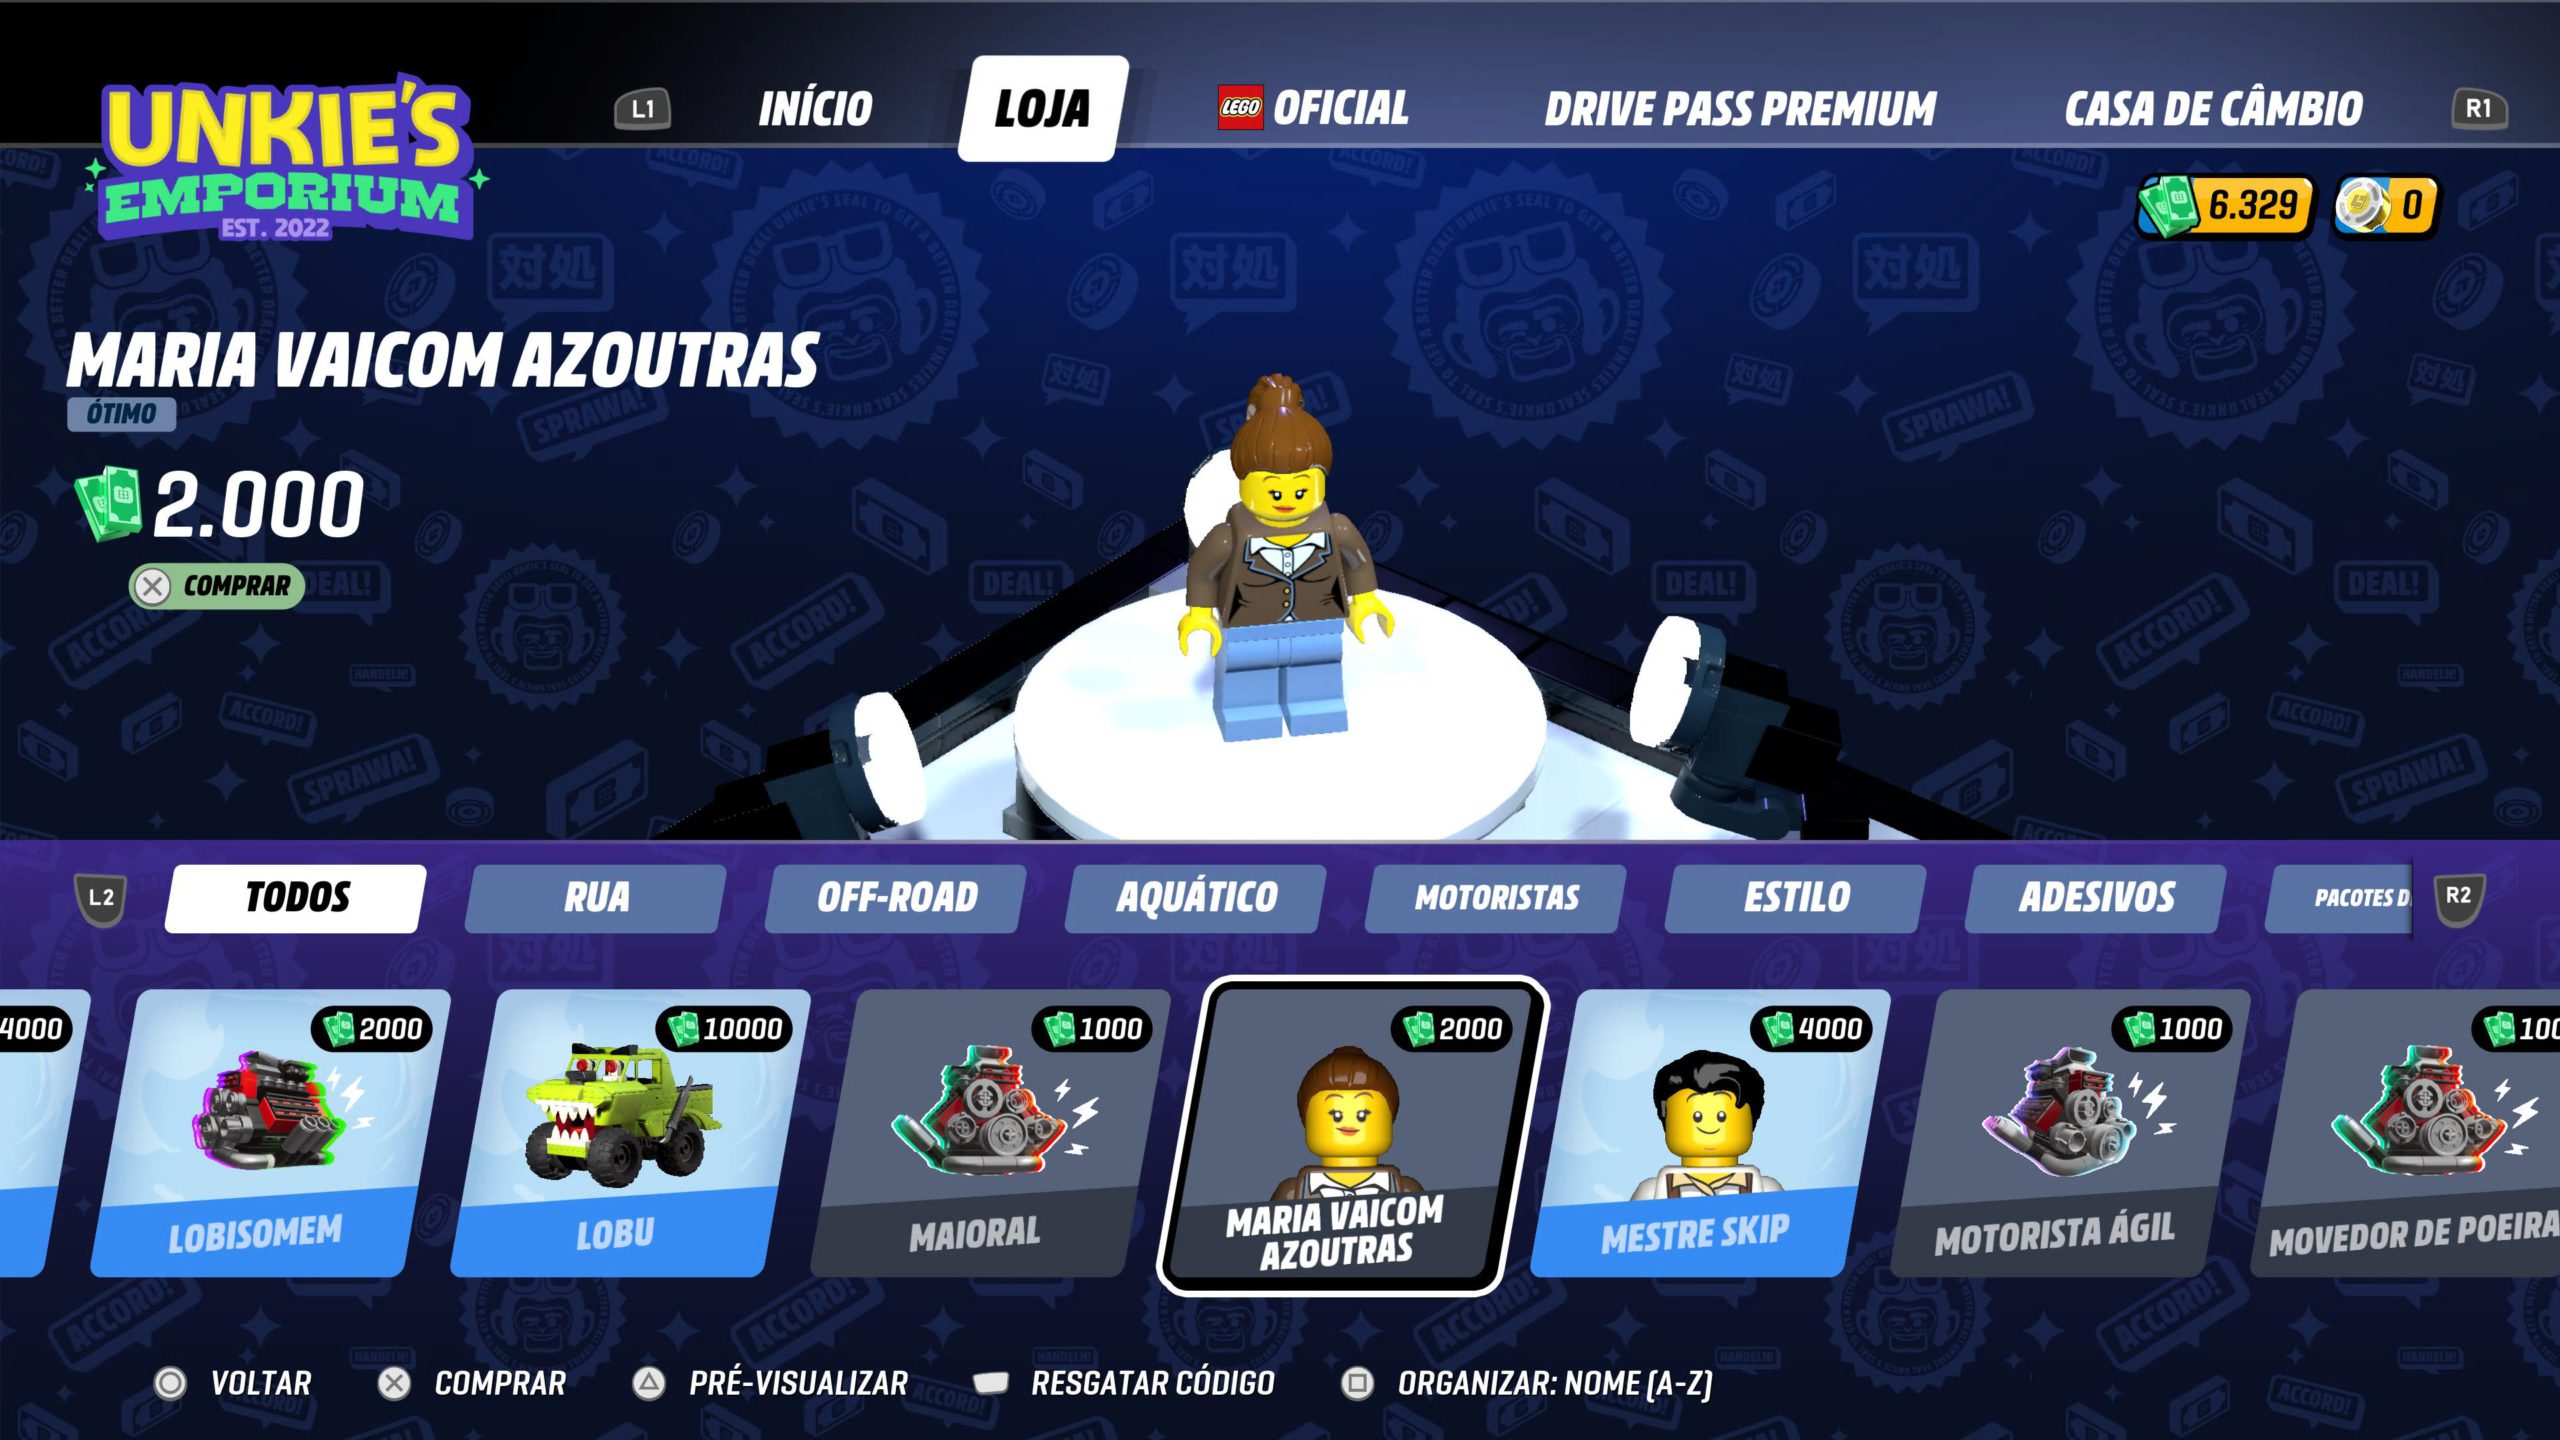 LEGO 2K Drive: veja trailer e detalhes do jogo de corrida em mundo